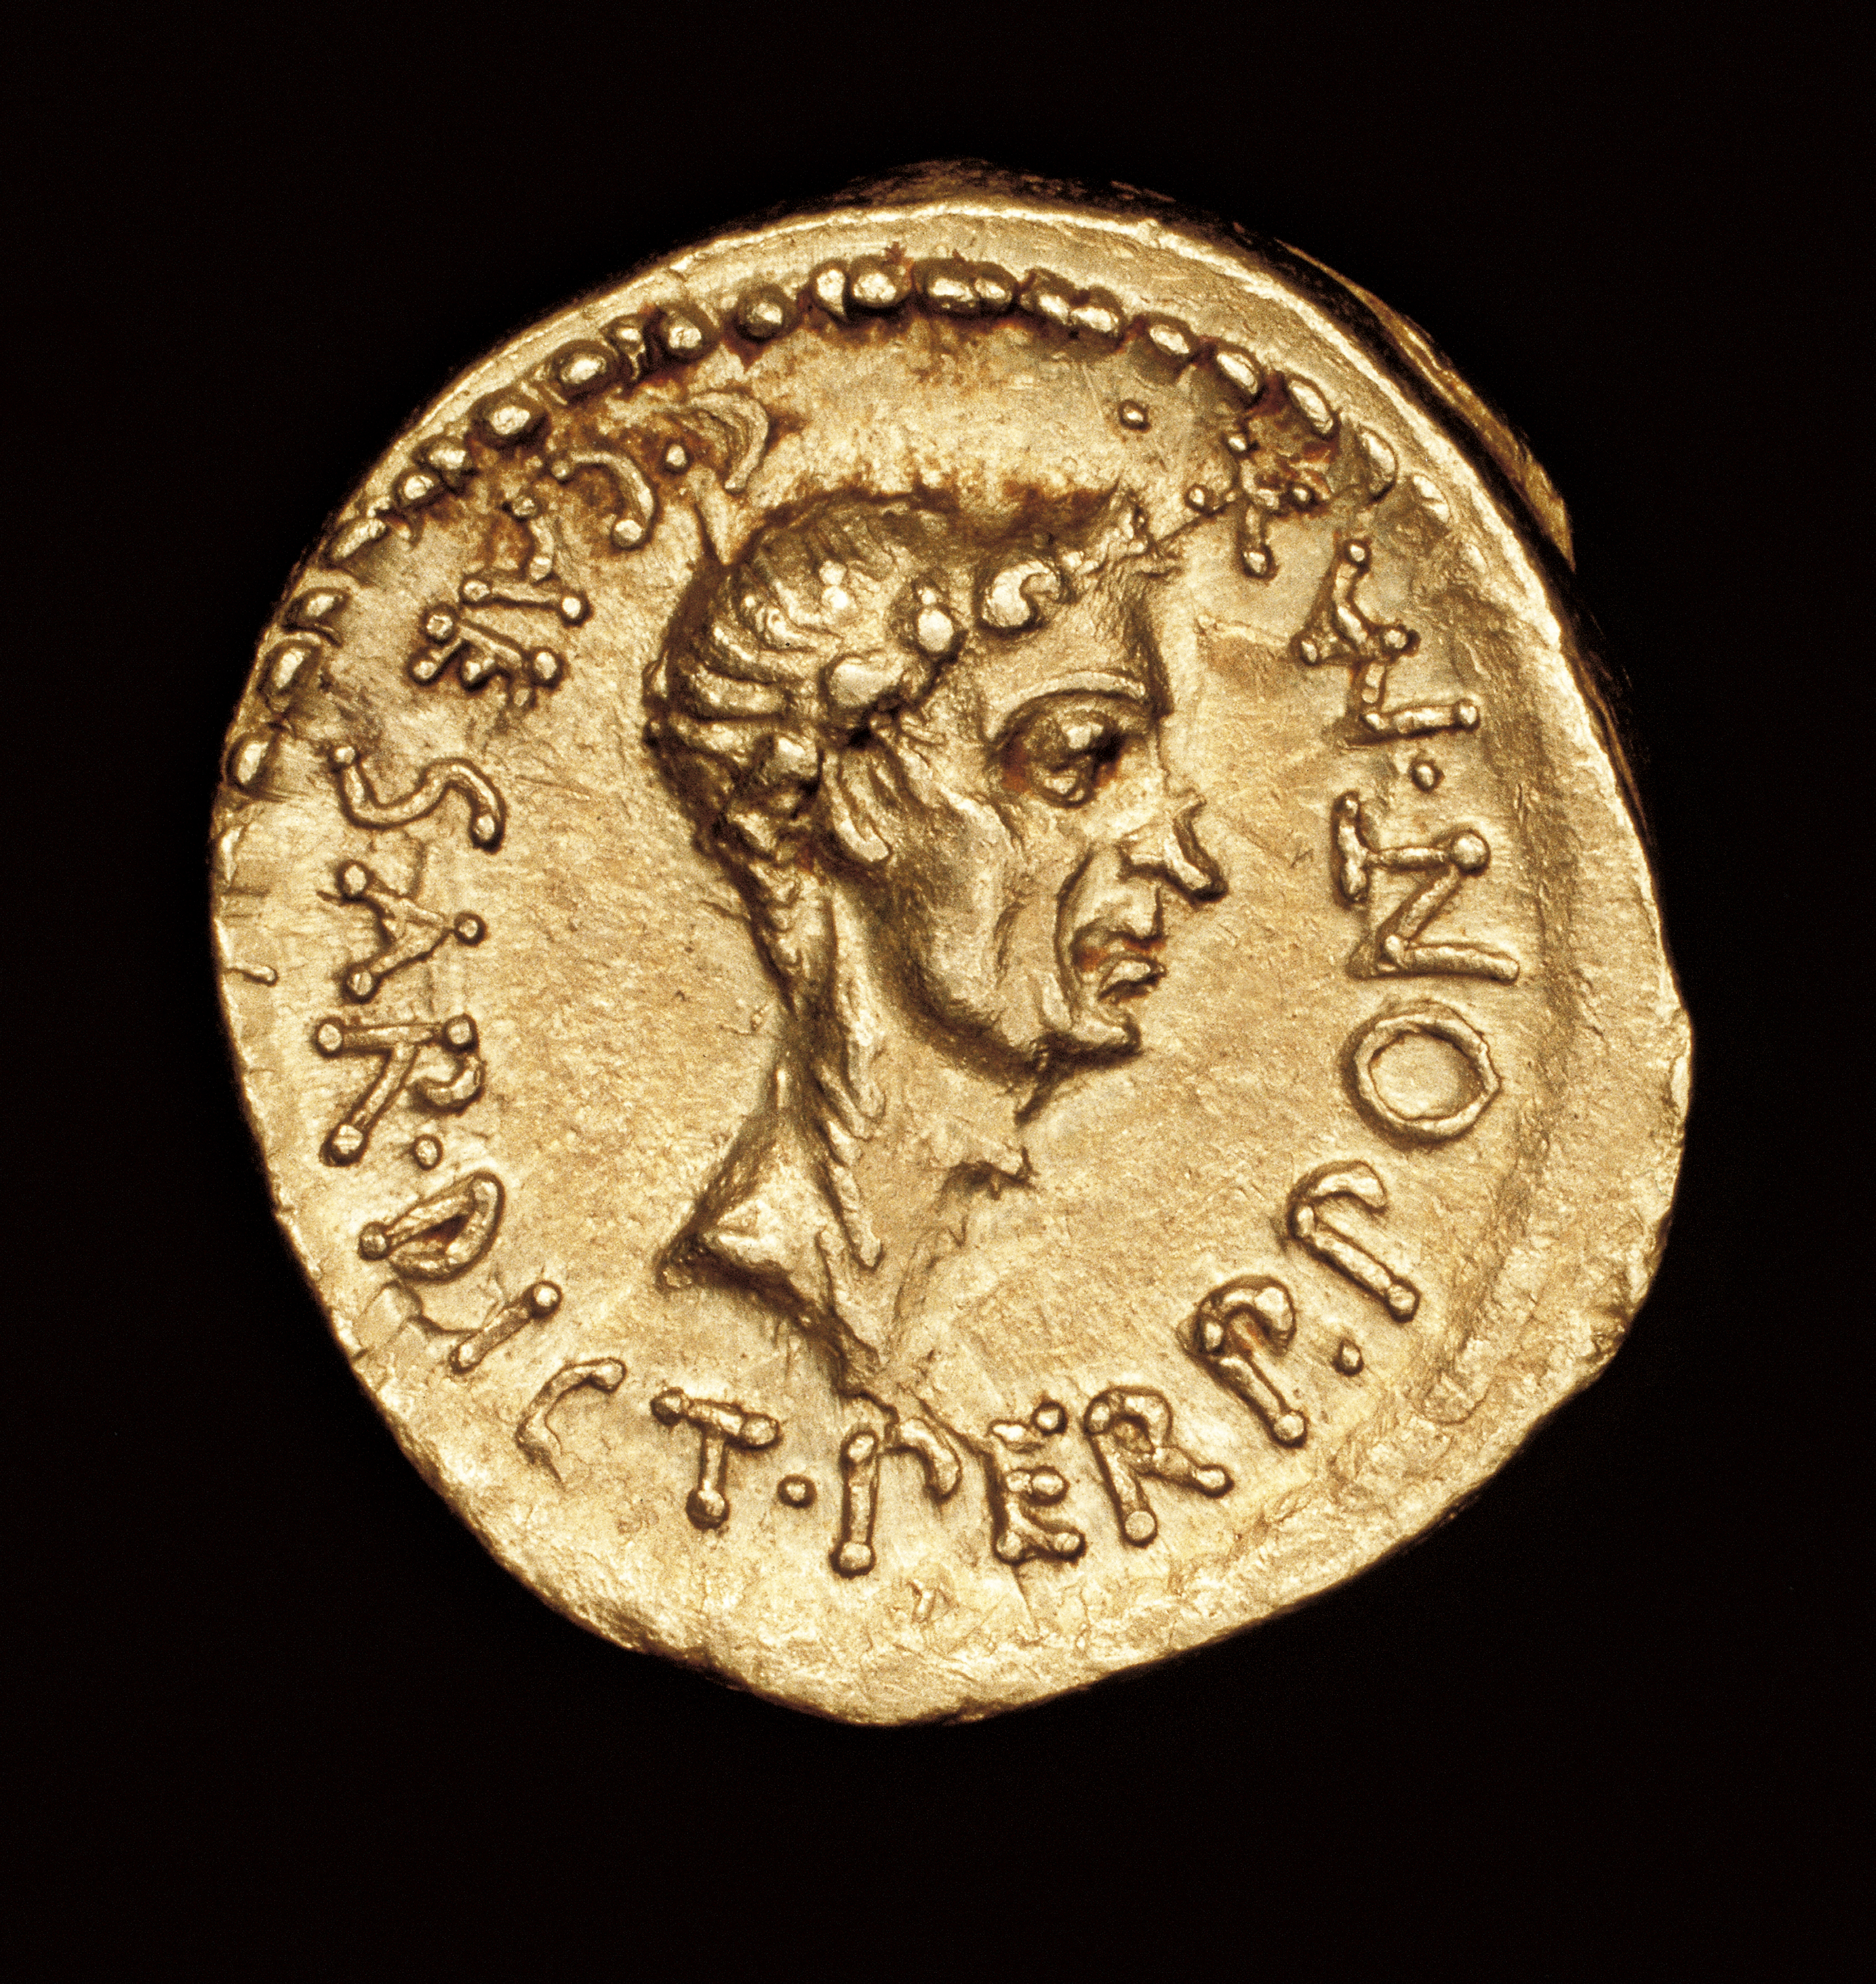 Rare Ancient Roman Coin, Roman Gold Aereus, Julius Caesar, c 43 BC, minted in Cisalpine Gaul